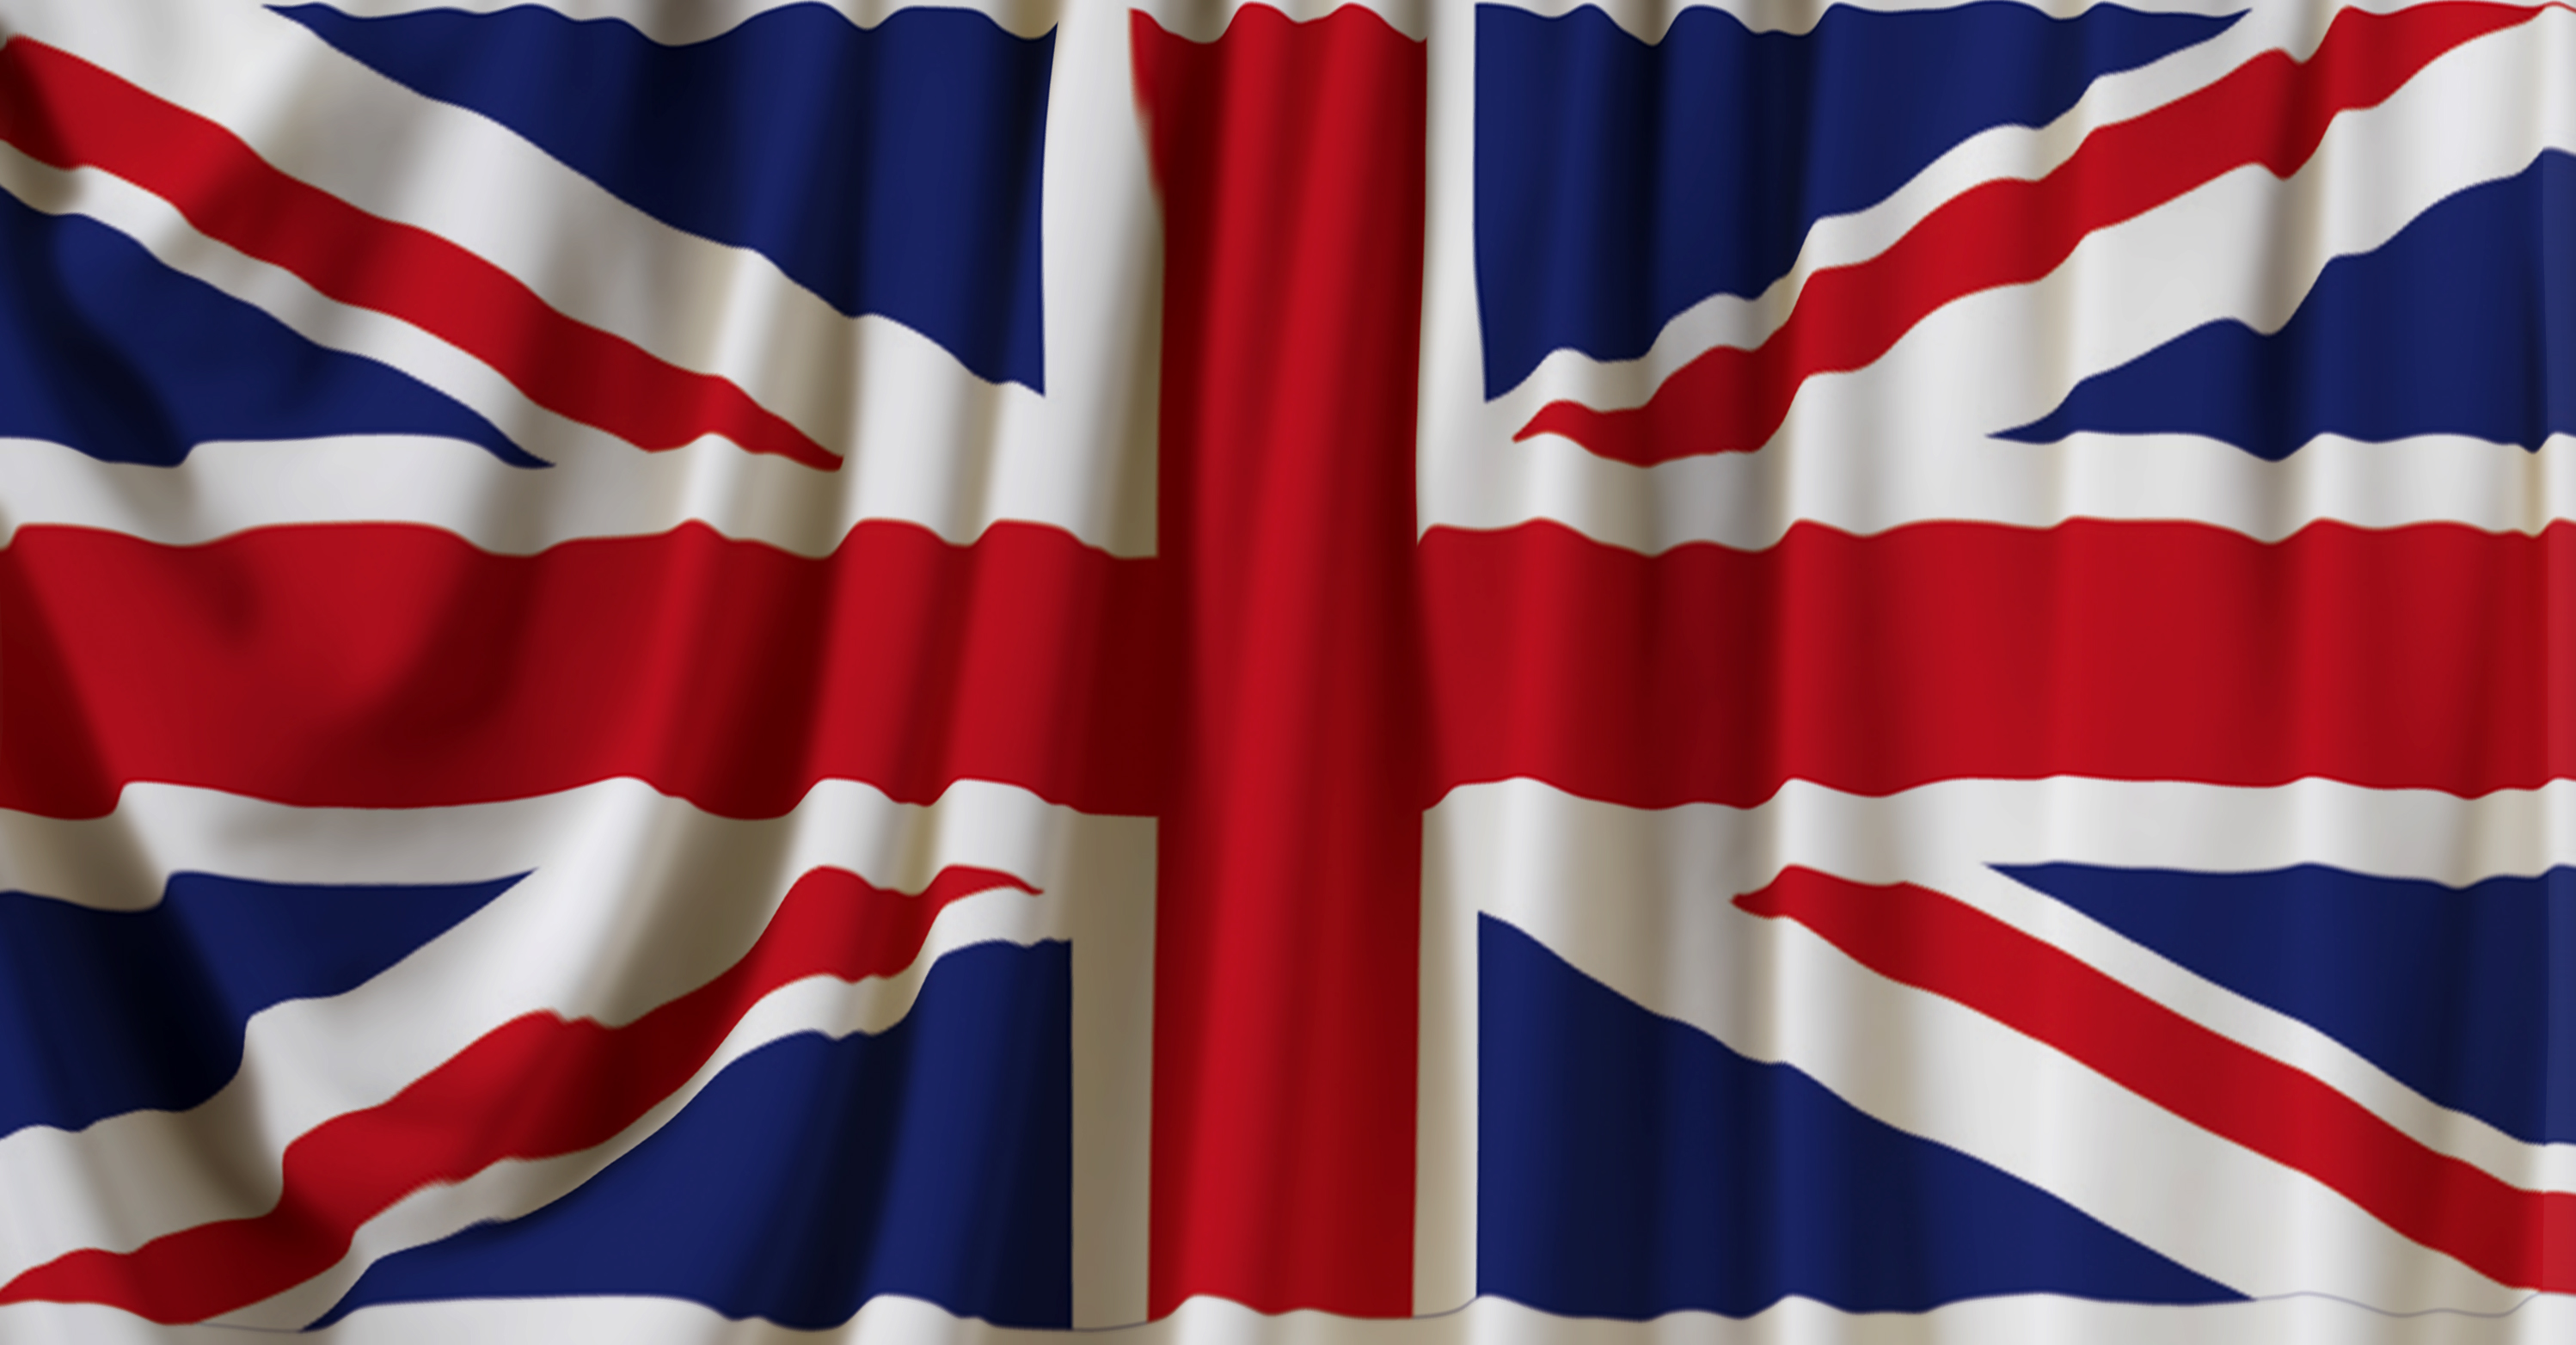 דגל אנגליה (יוצר באילוס') על וילון מקומט, עם פילטרים